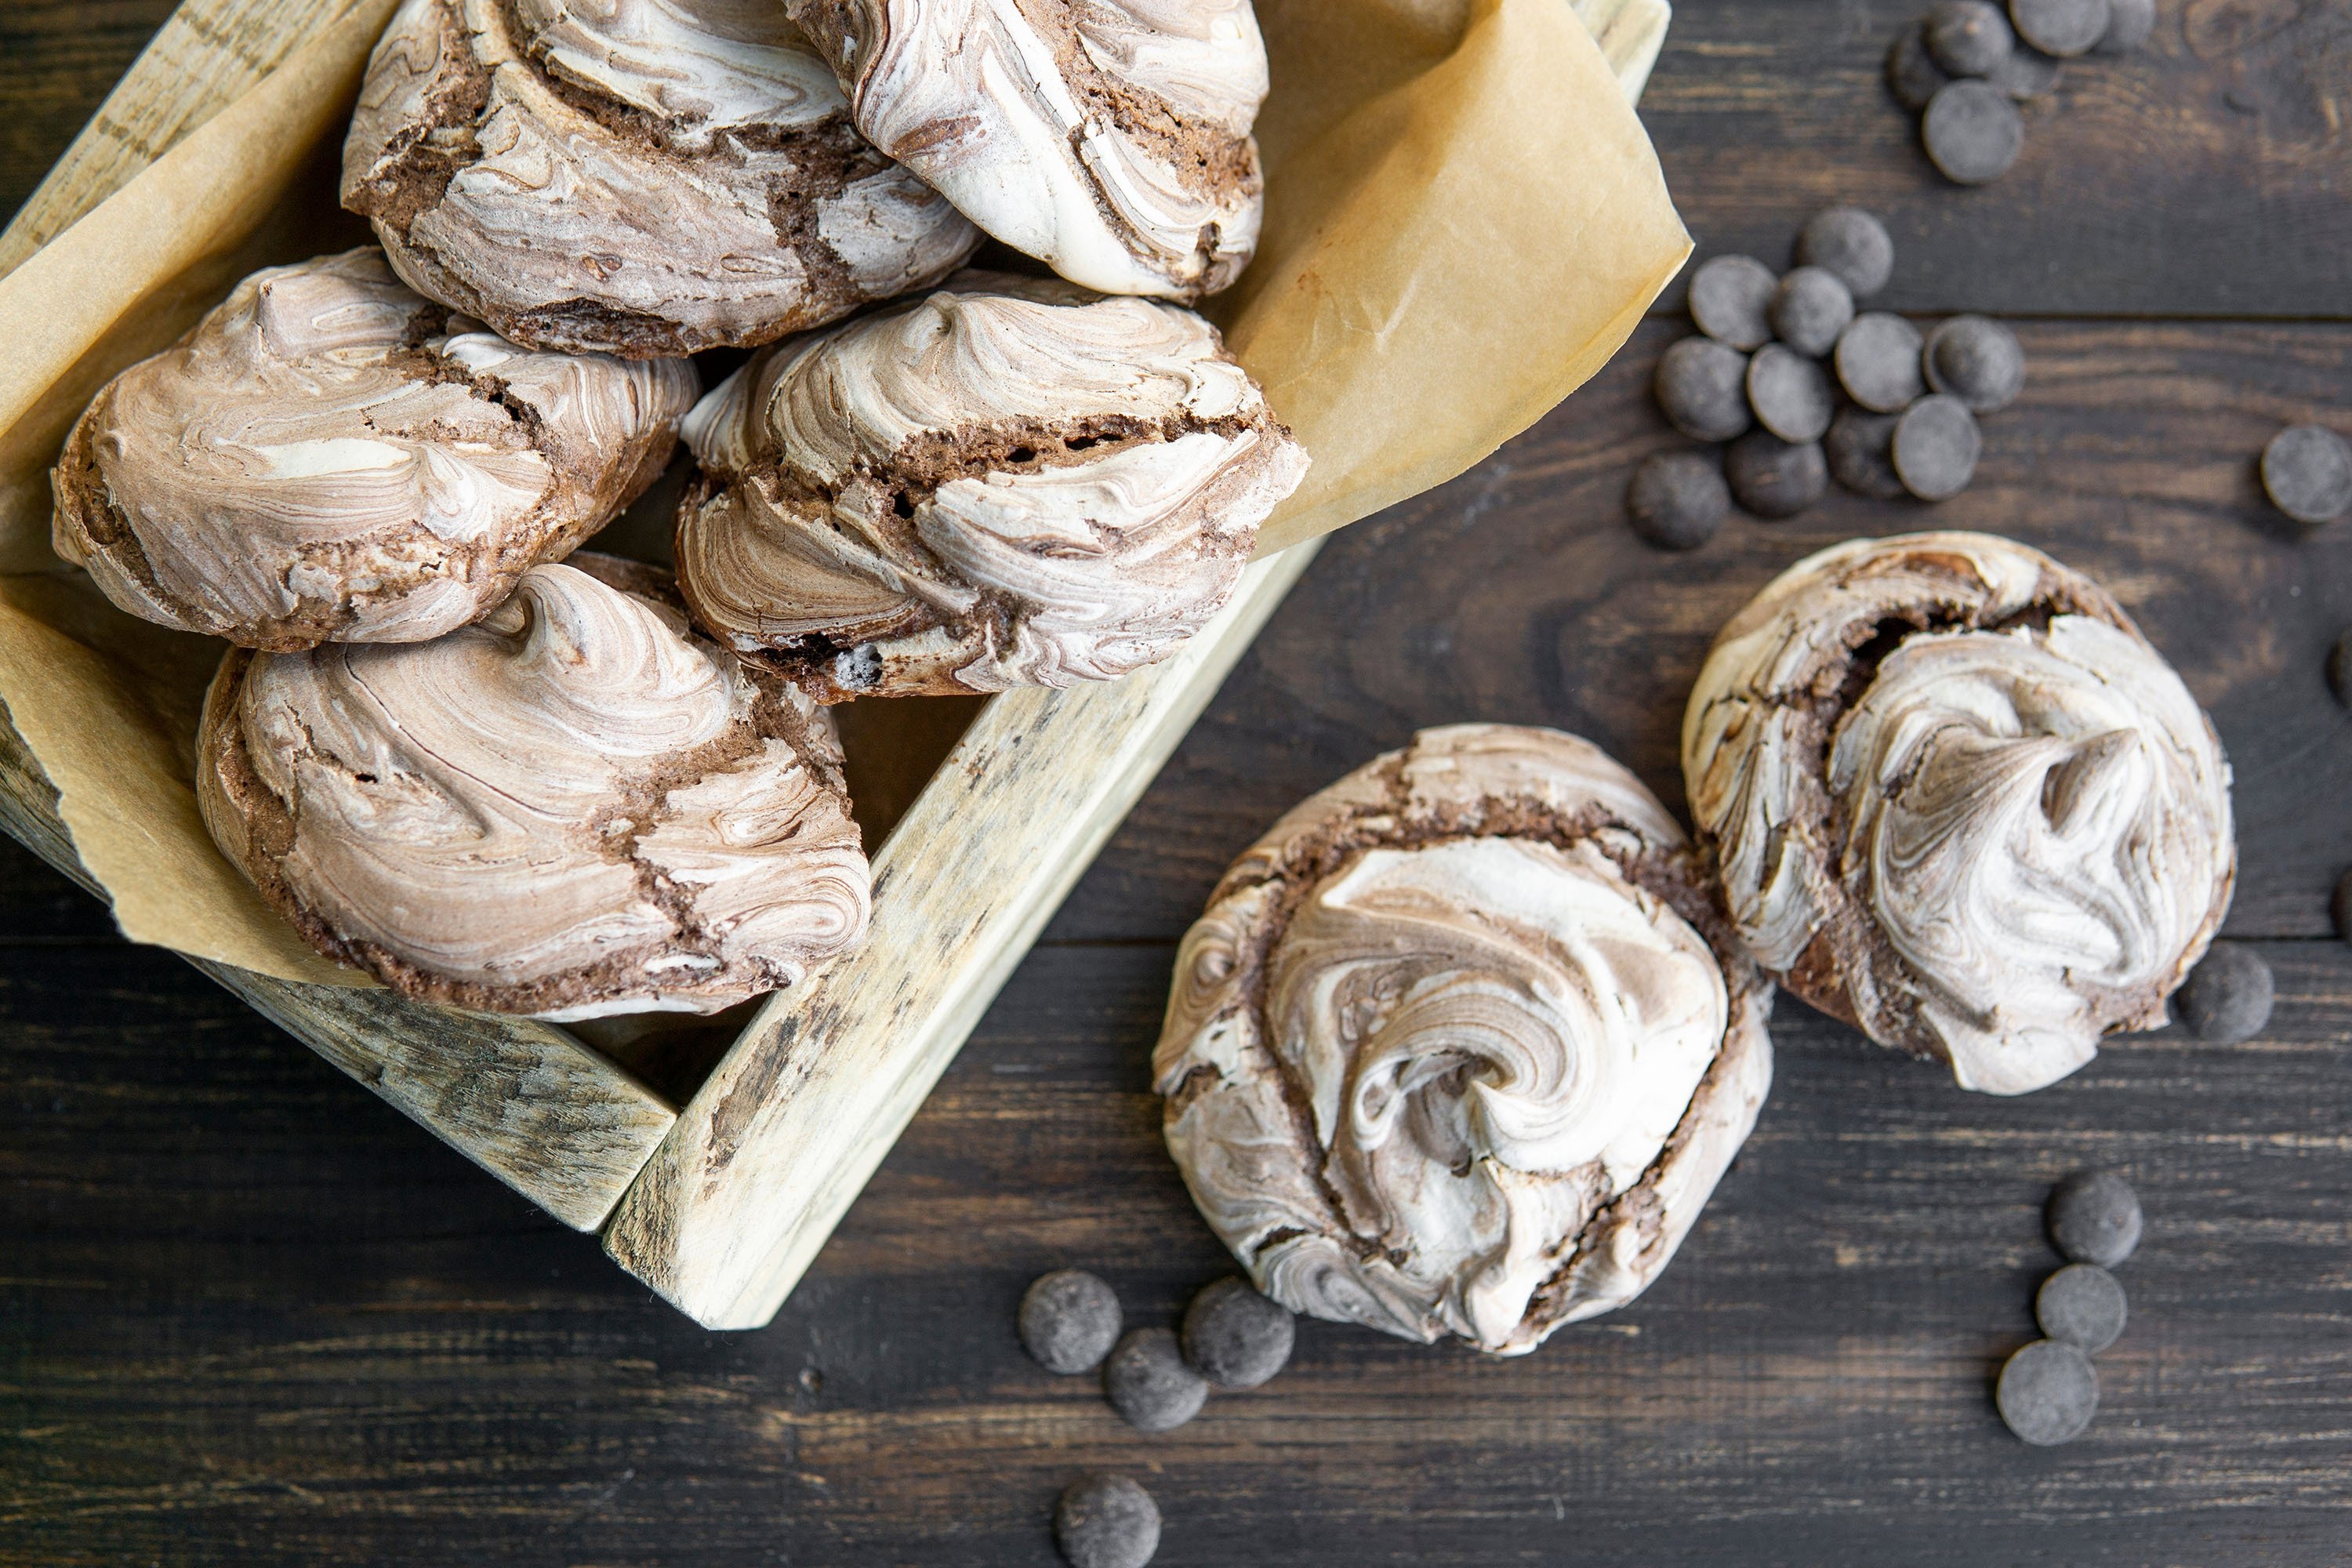 Homemade chocolate meringue cookies. (Shutterstock Photo)